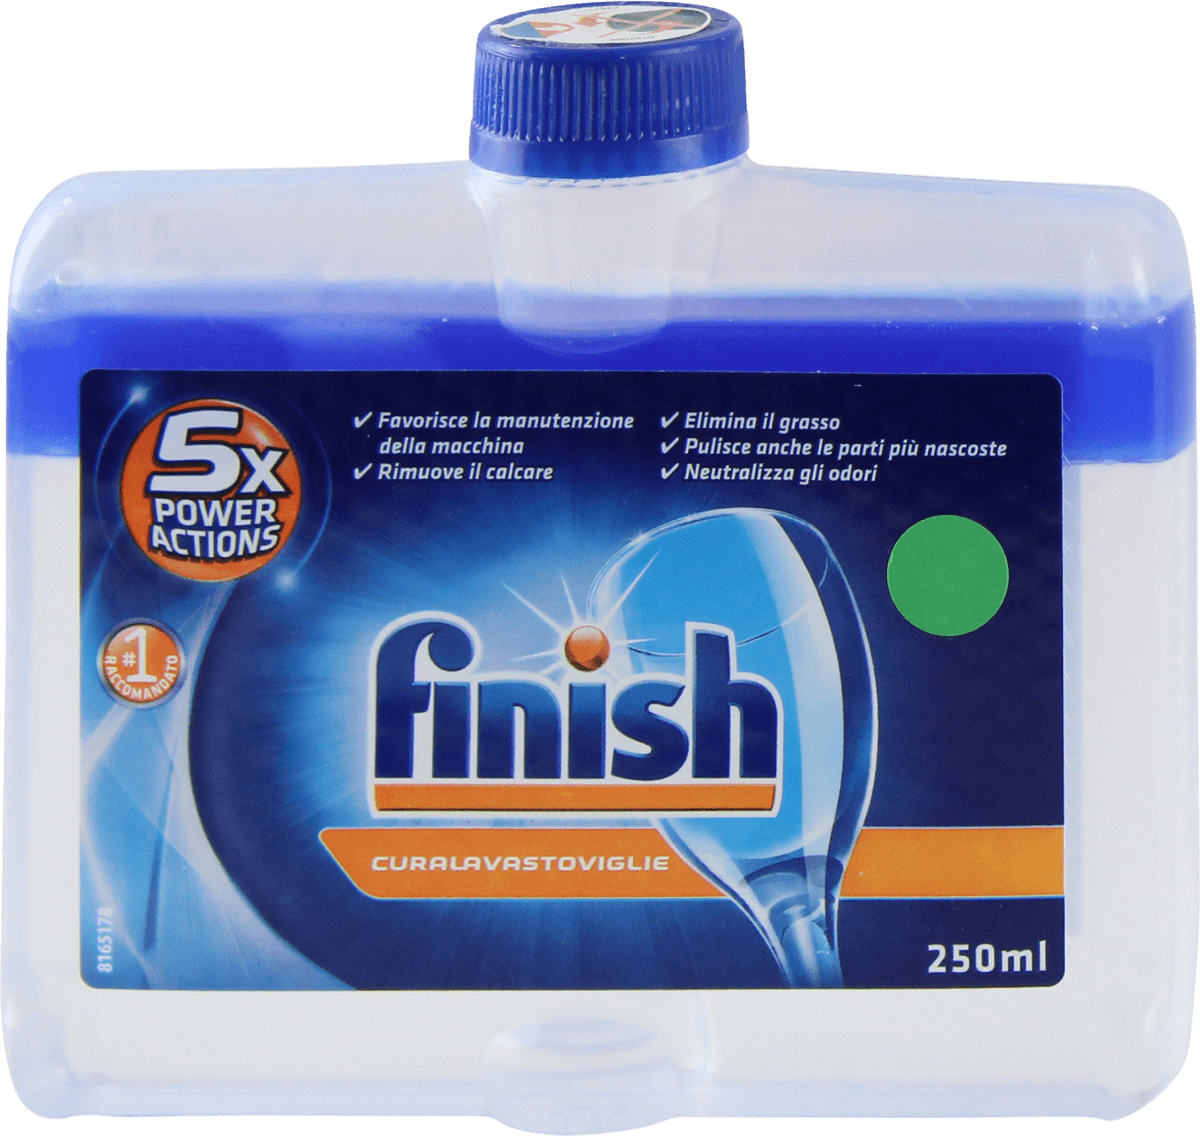 Finish Detergente cura lavastoviglie, 250 ml Acquisti online